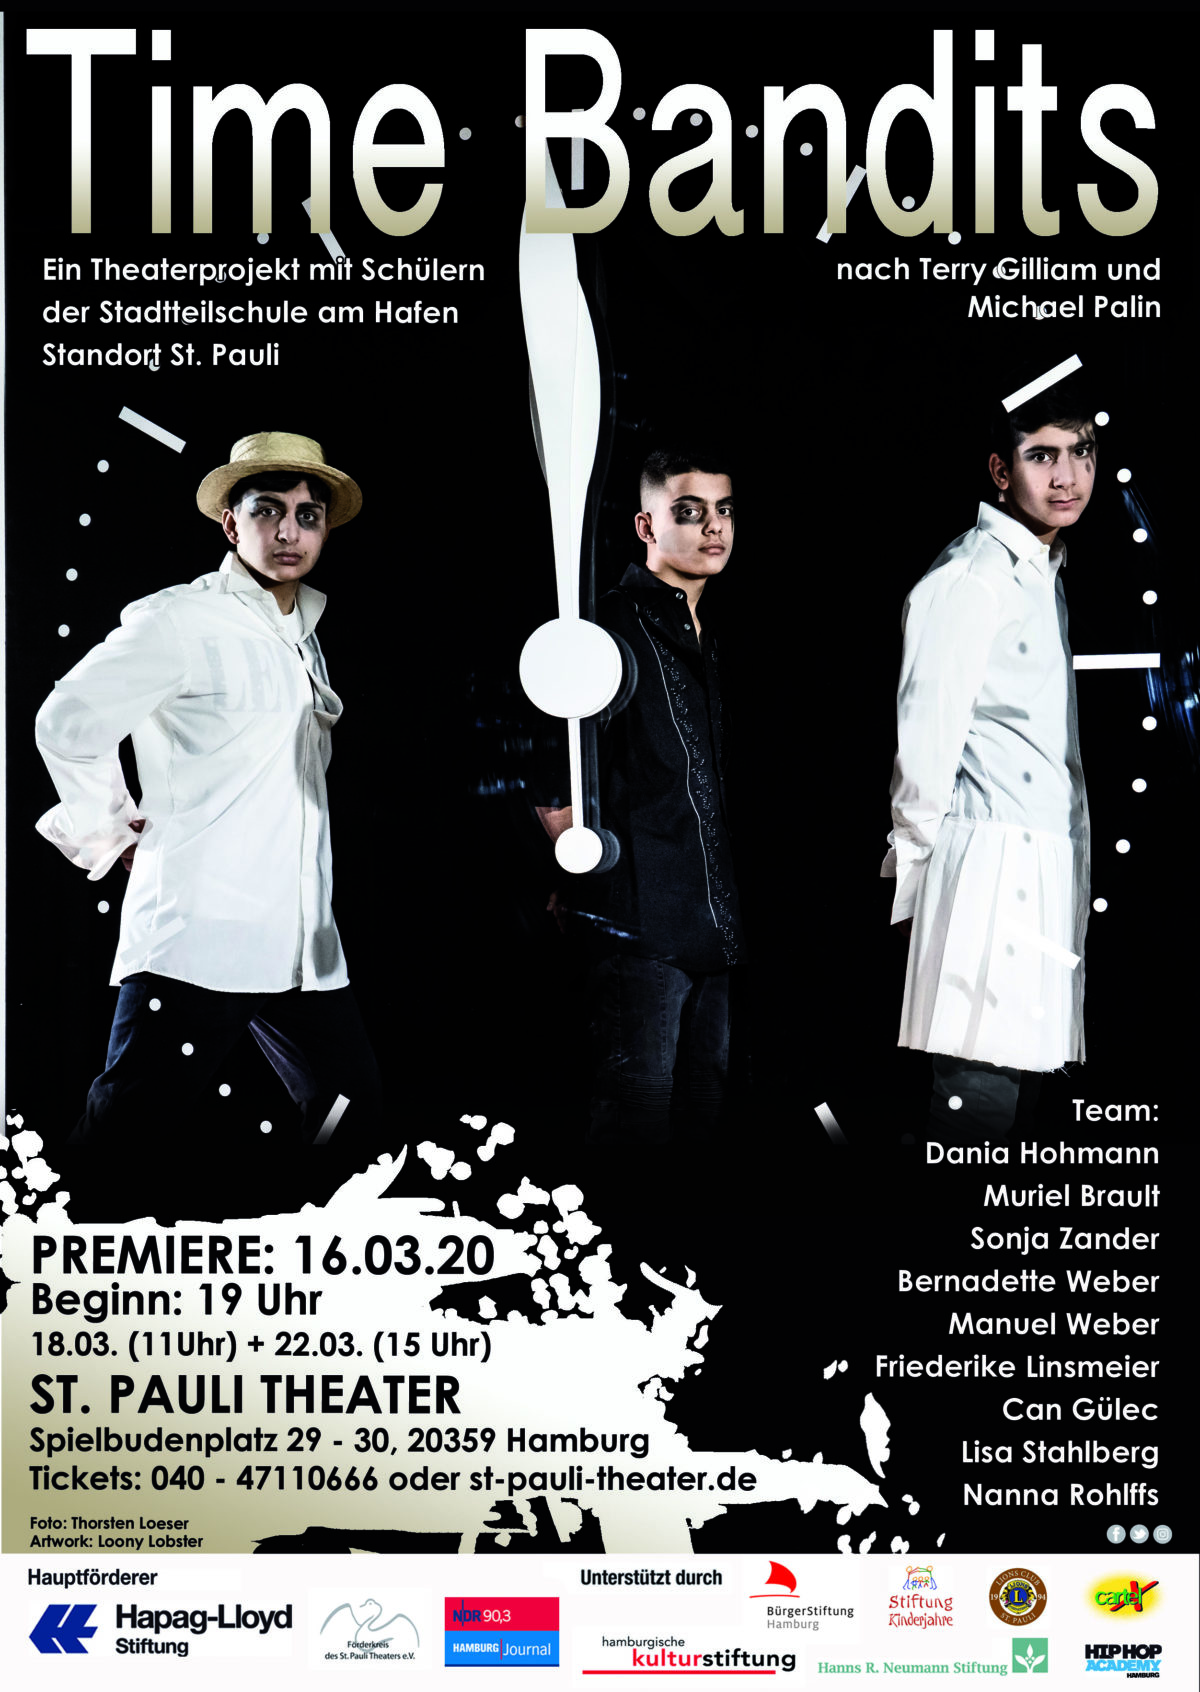 Premiere von „Time Bandits“ am 16.3.2020 um 19 Uhr im St. Pauli Theater